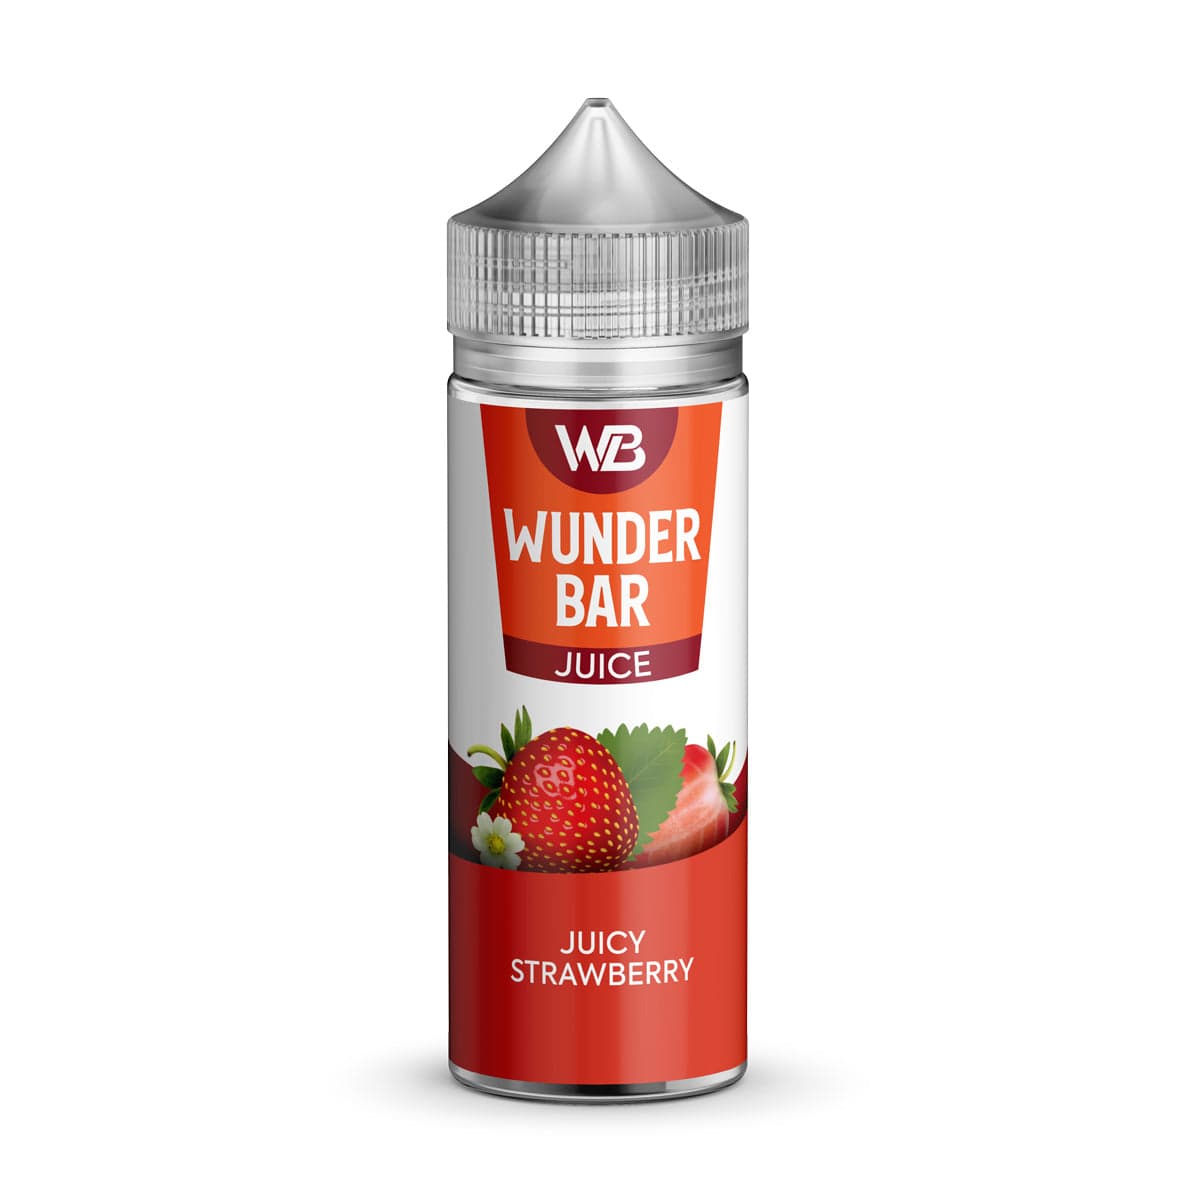 Wundar Bar Juice 100ml E-liquid Shortfill - Mcr Vape Distro